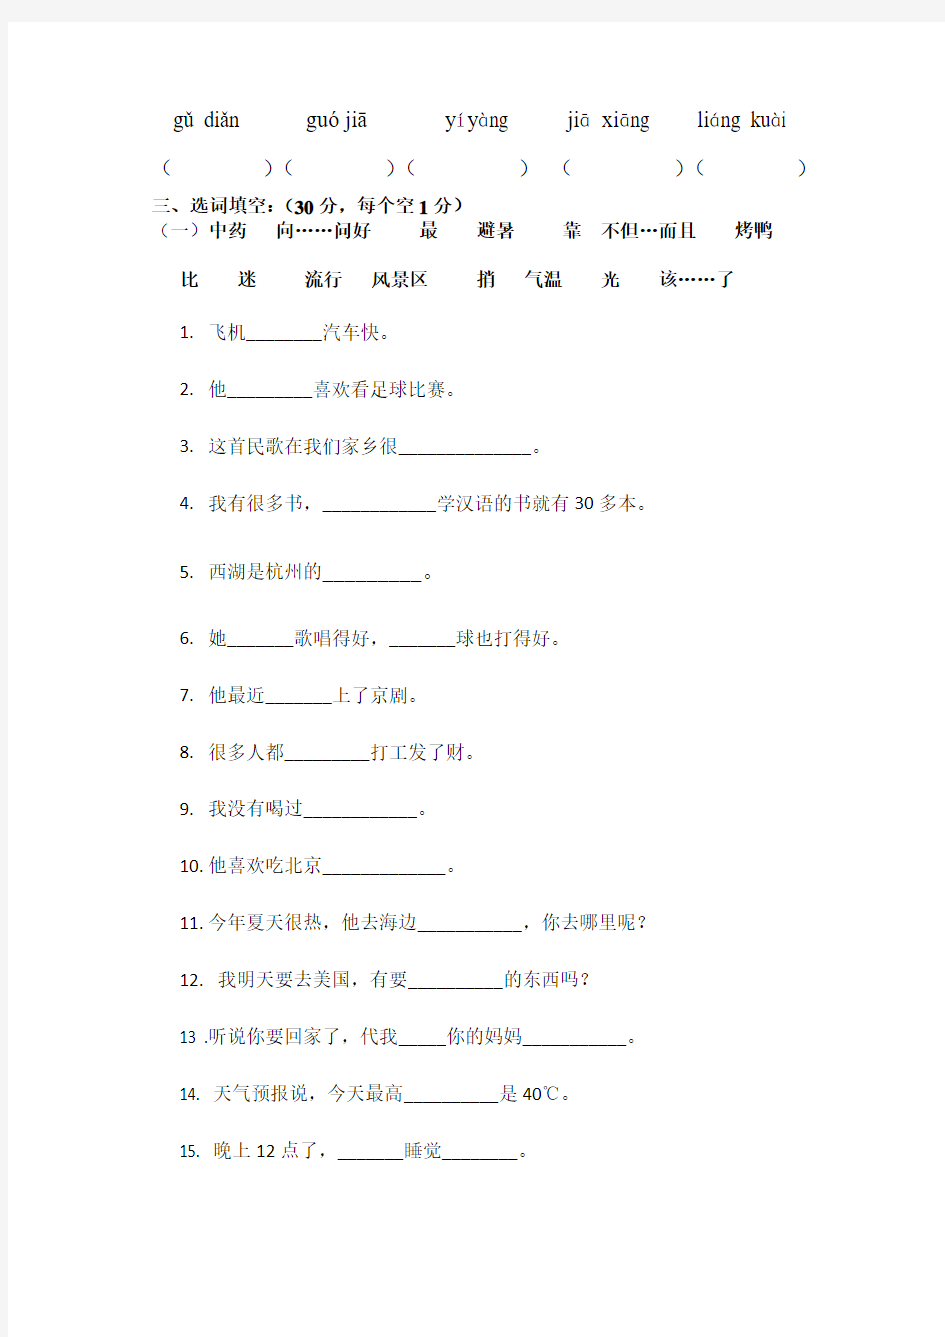 《汉语教程》第二册上词语考试(第1-5课)